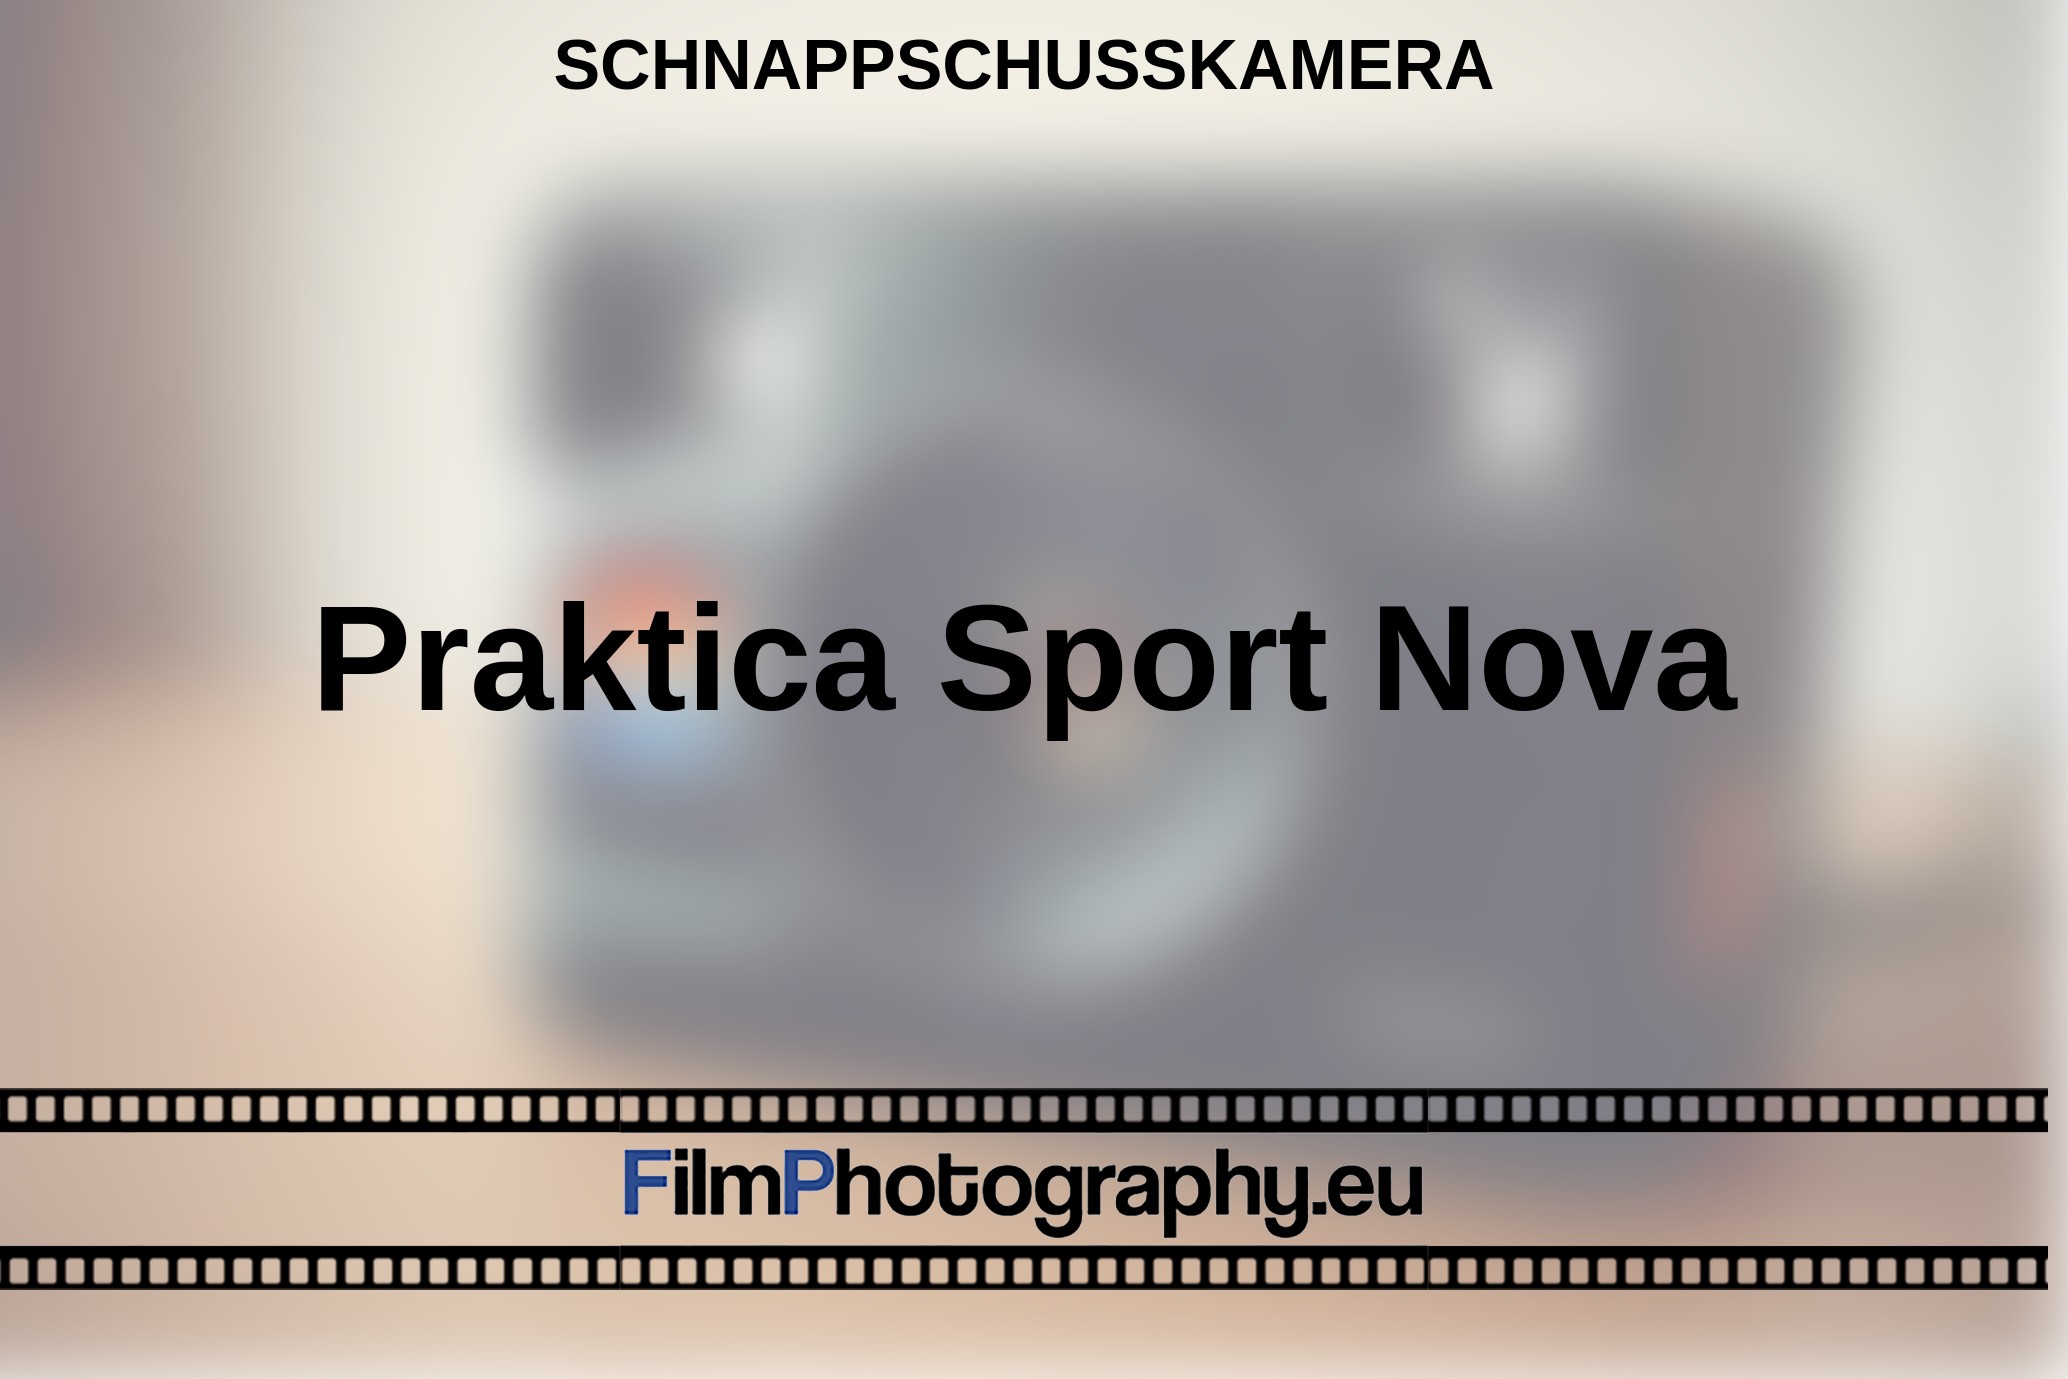 Praktica-Sport-Nova-Schnappschusskamera-bnv.jpg